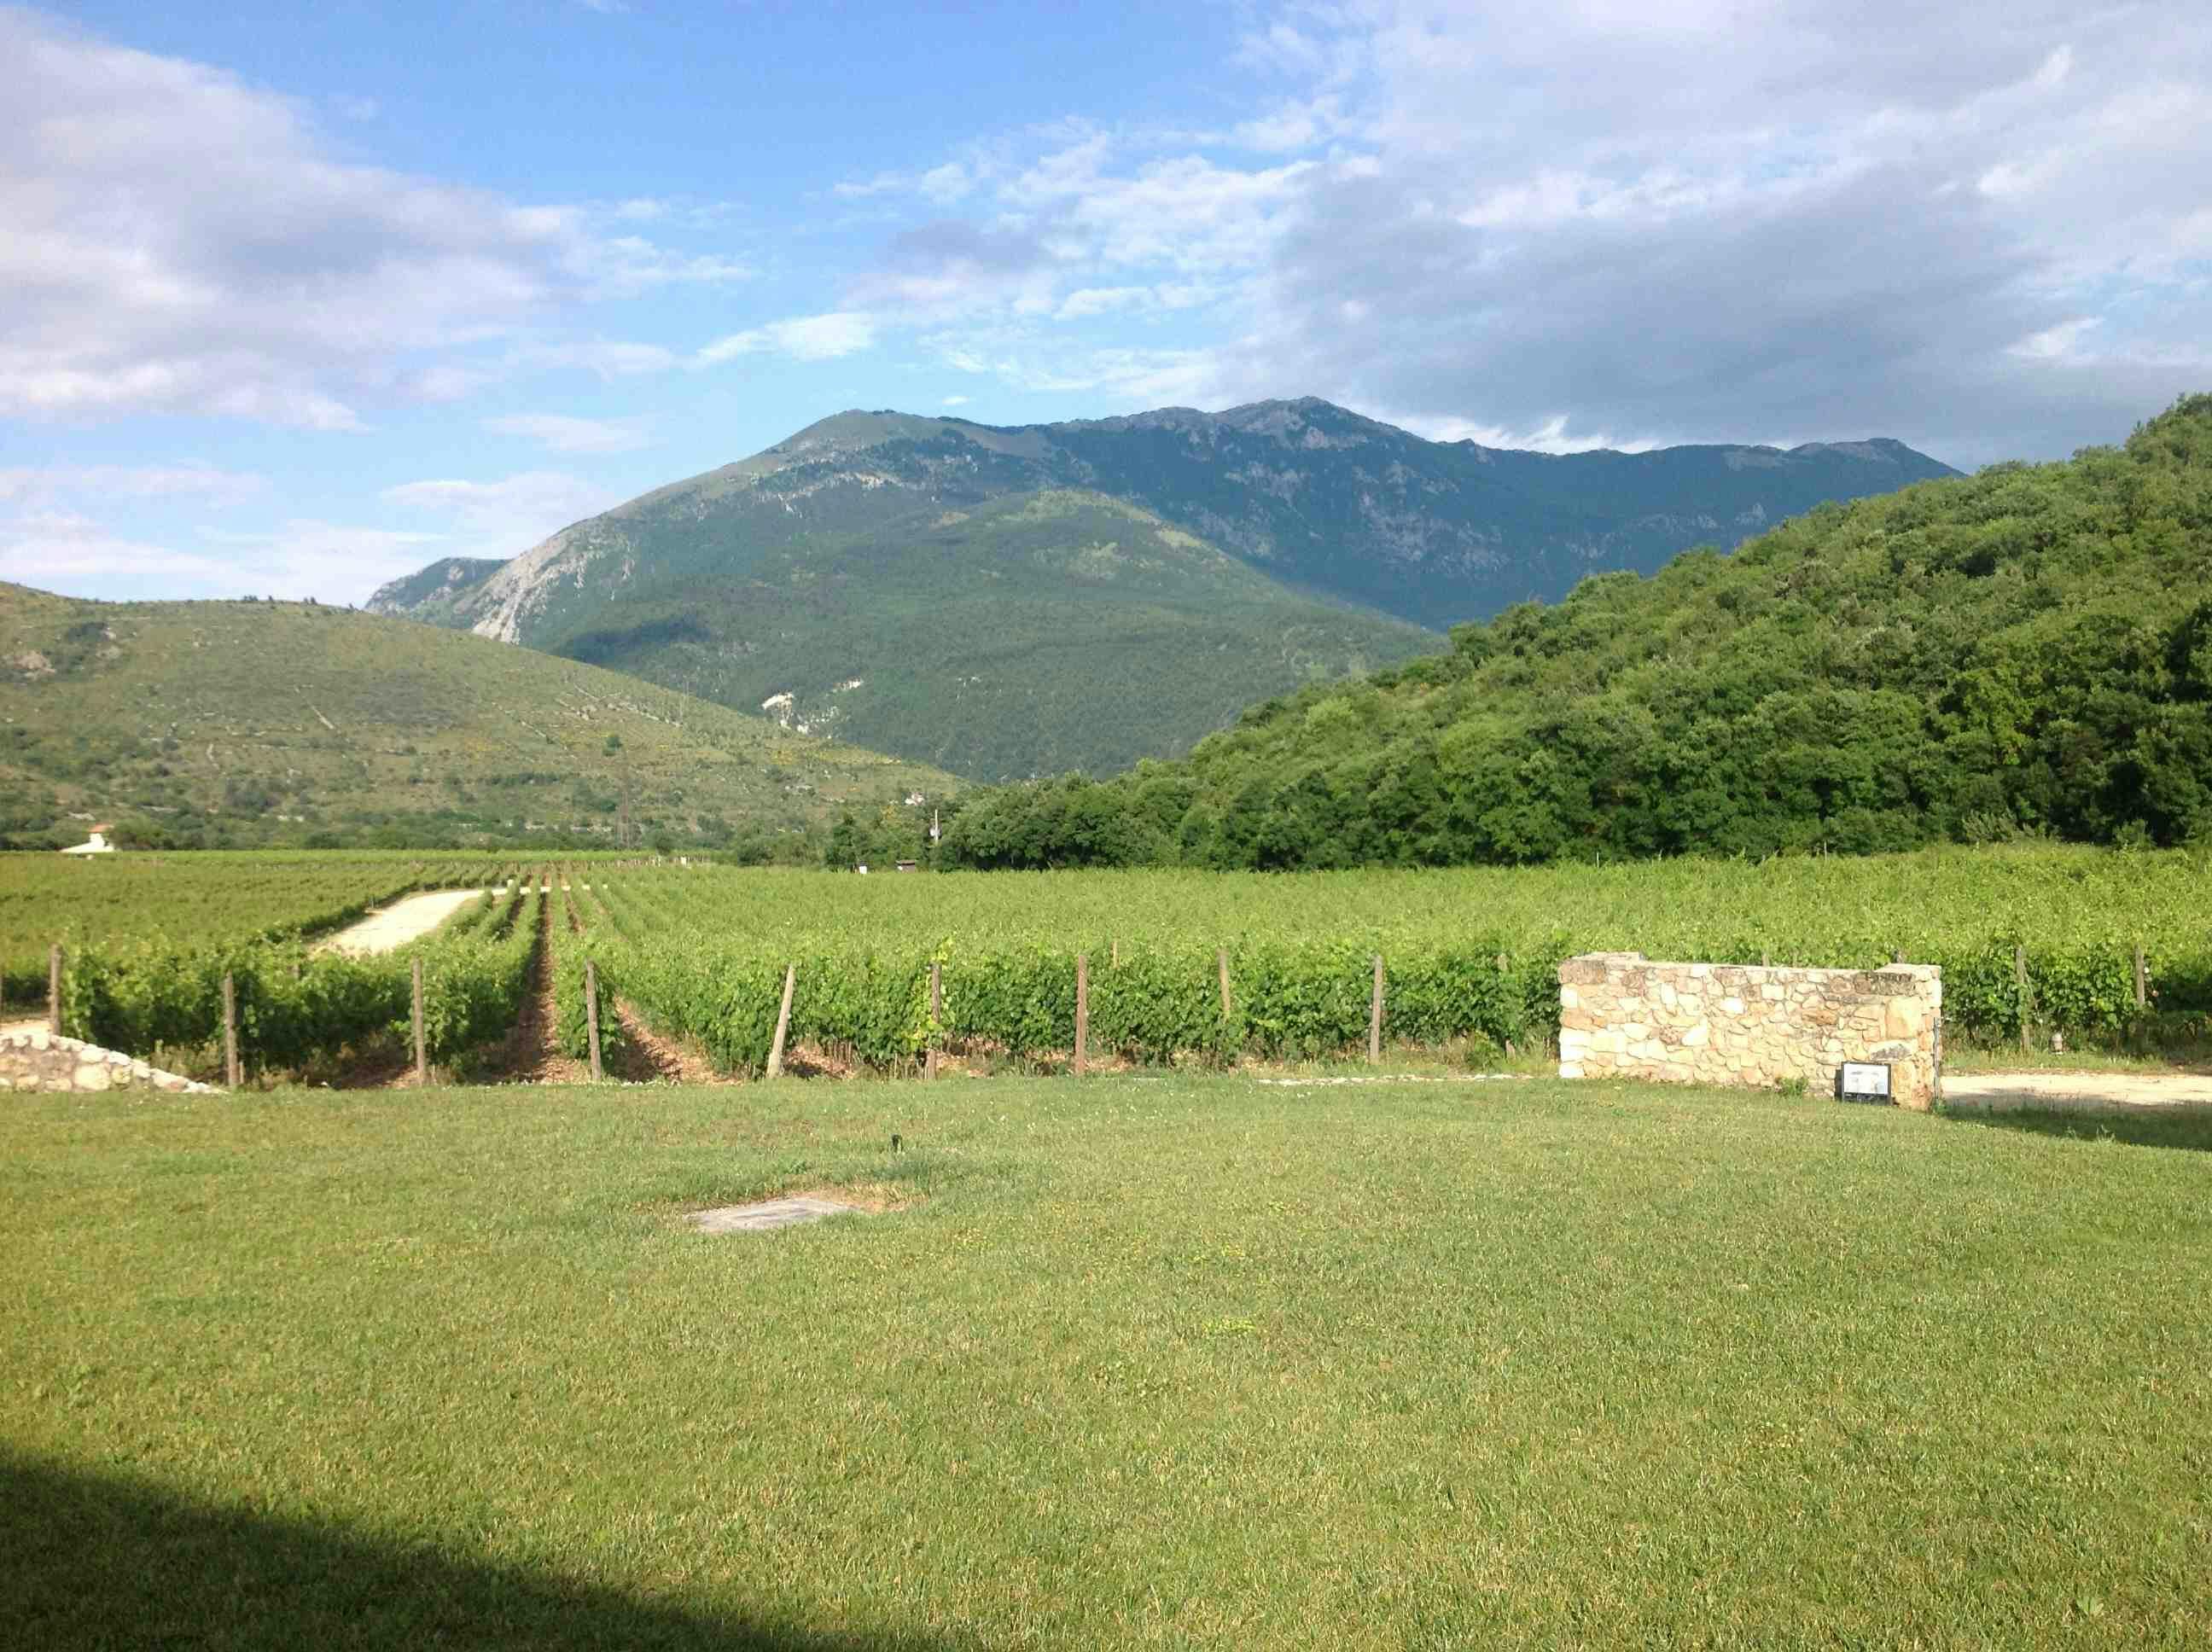 Kvalitetsvin från Abruzzo som inte kostar – Valle Reale